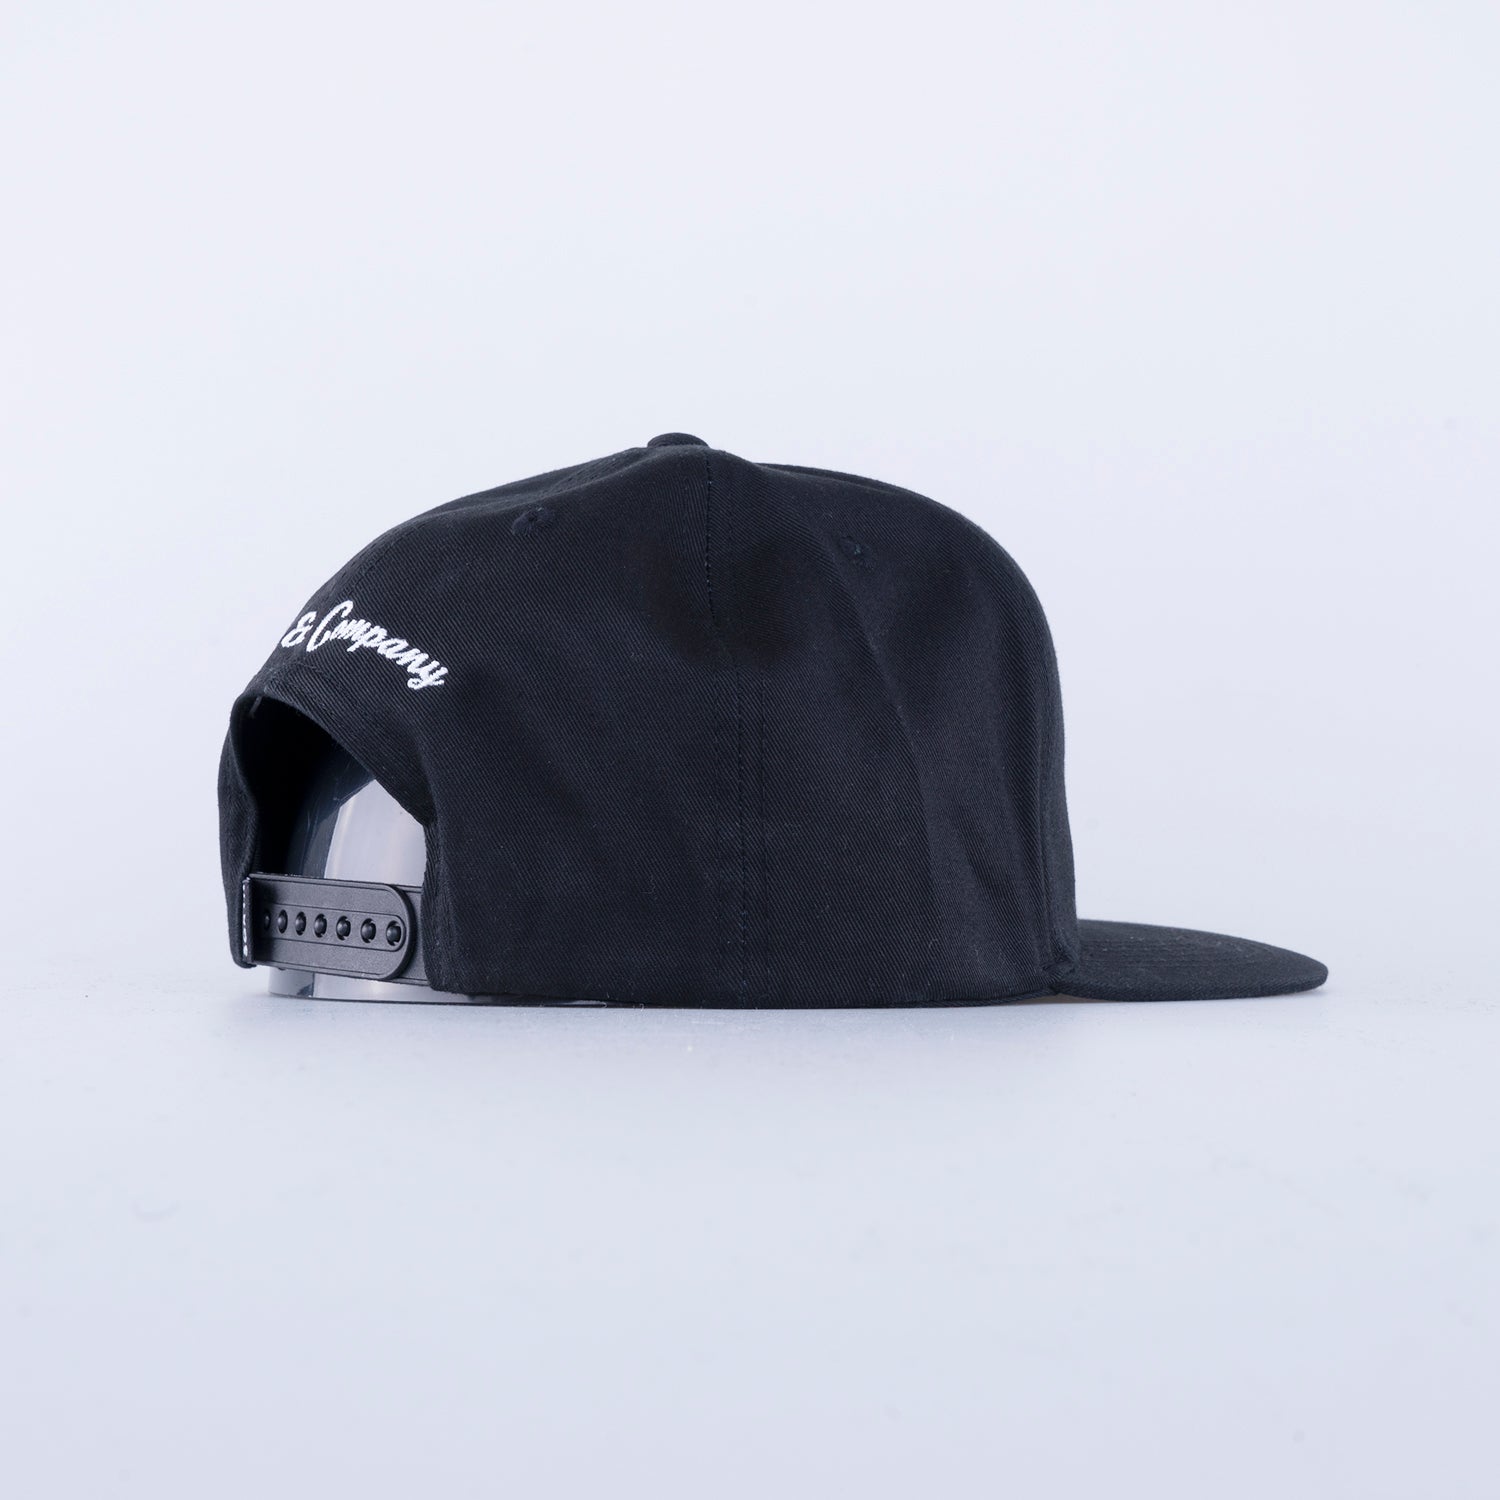 OCKELBO CAP - BLACK